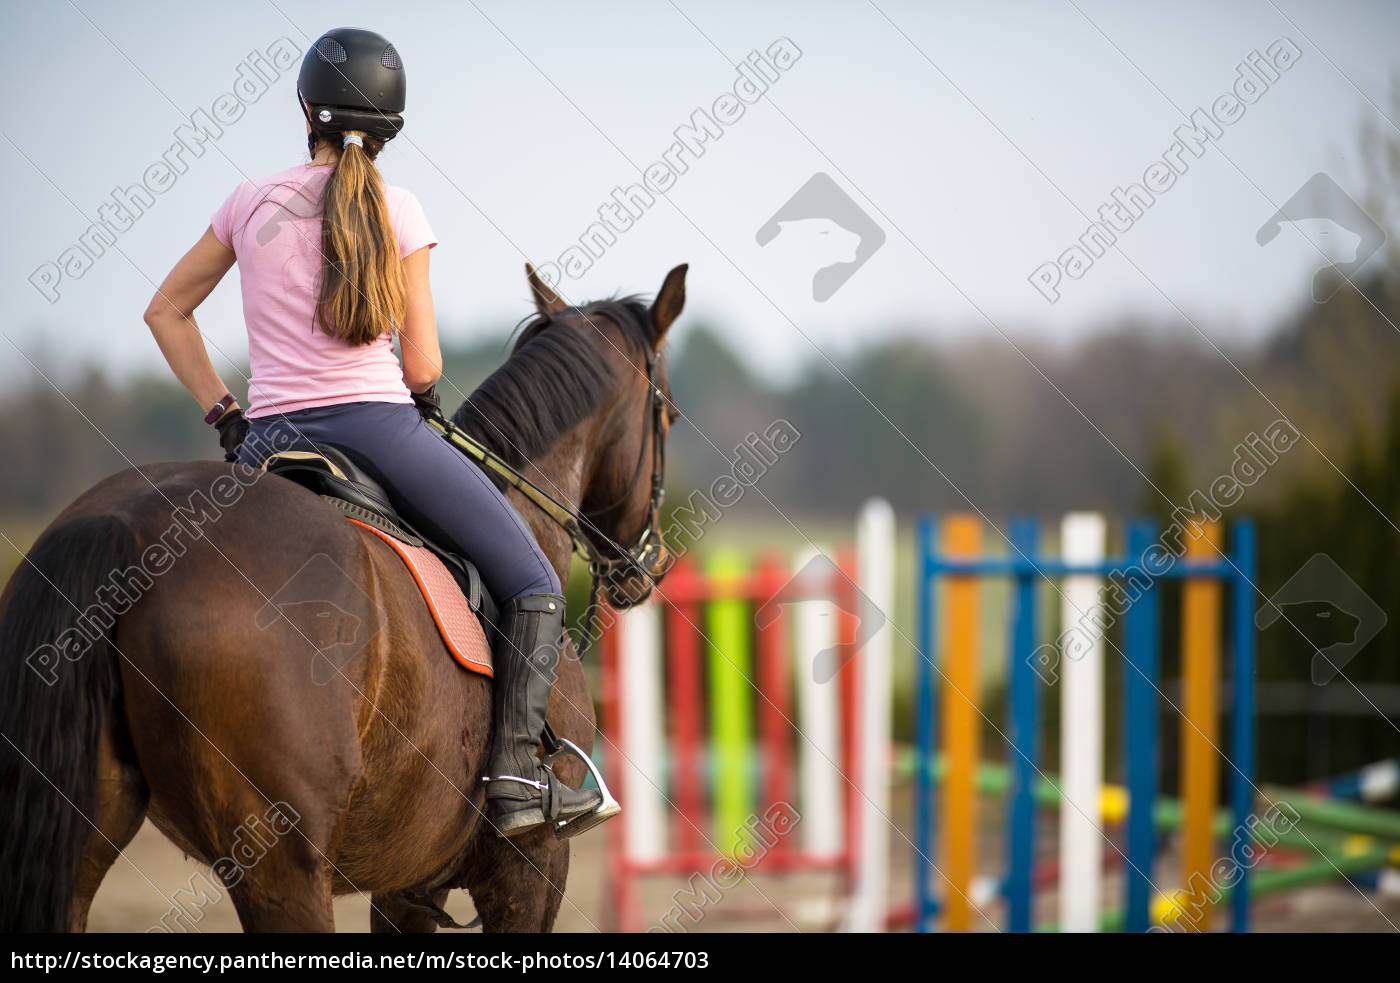 Jovem mostra pulando com cavalo - Fotos de arquivo #14202335